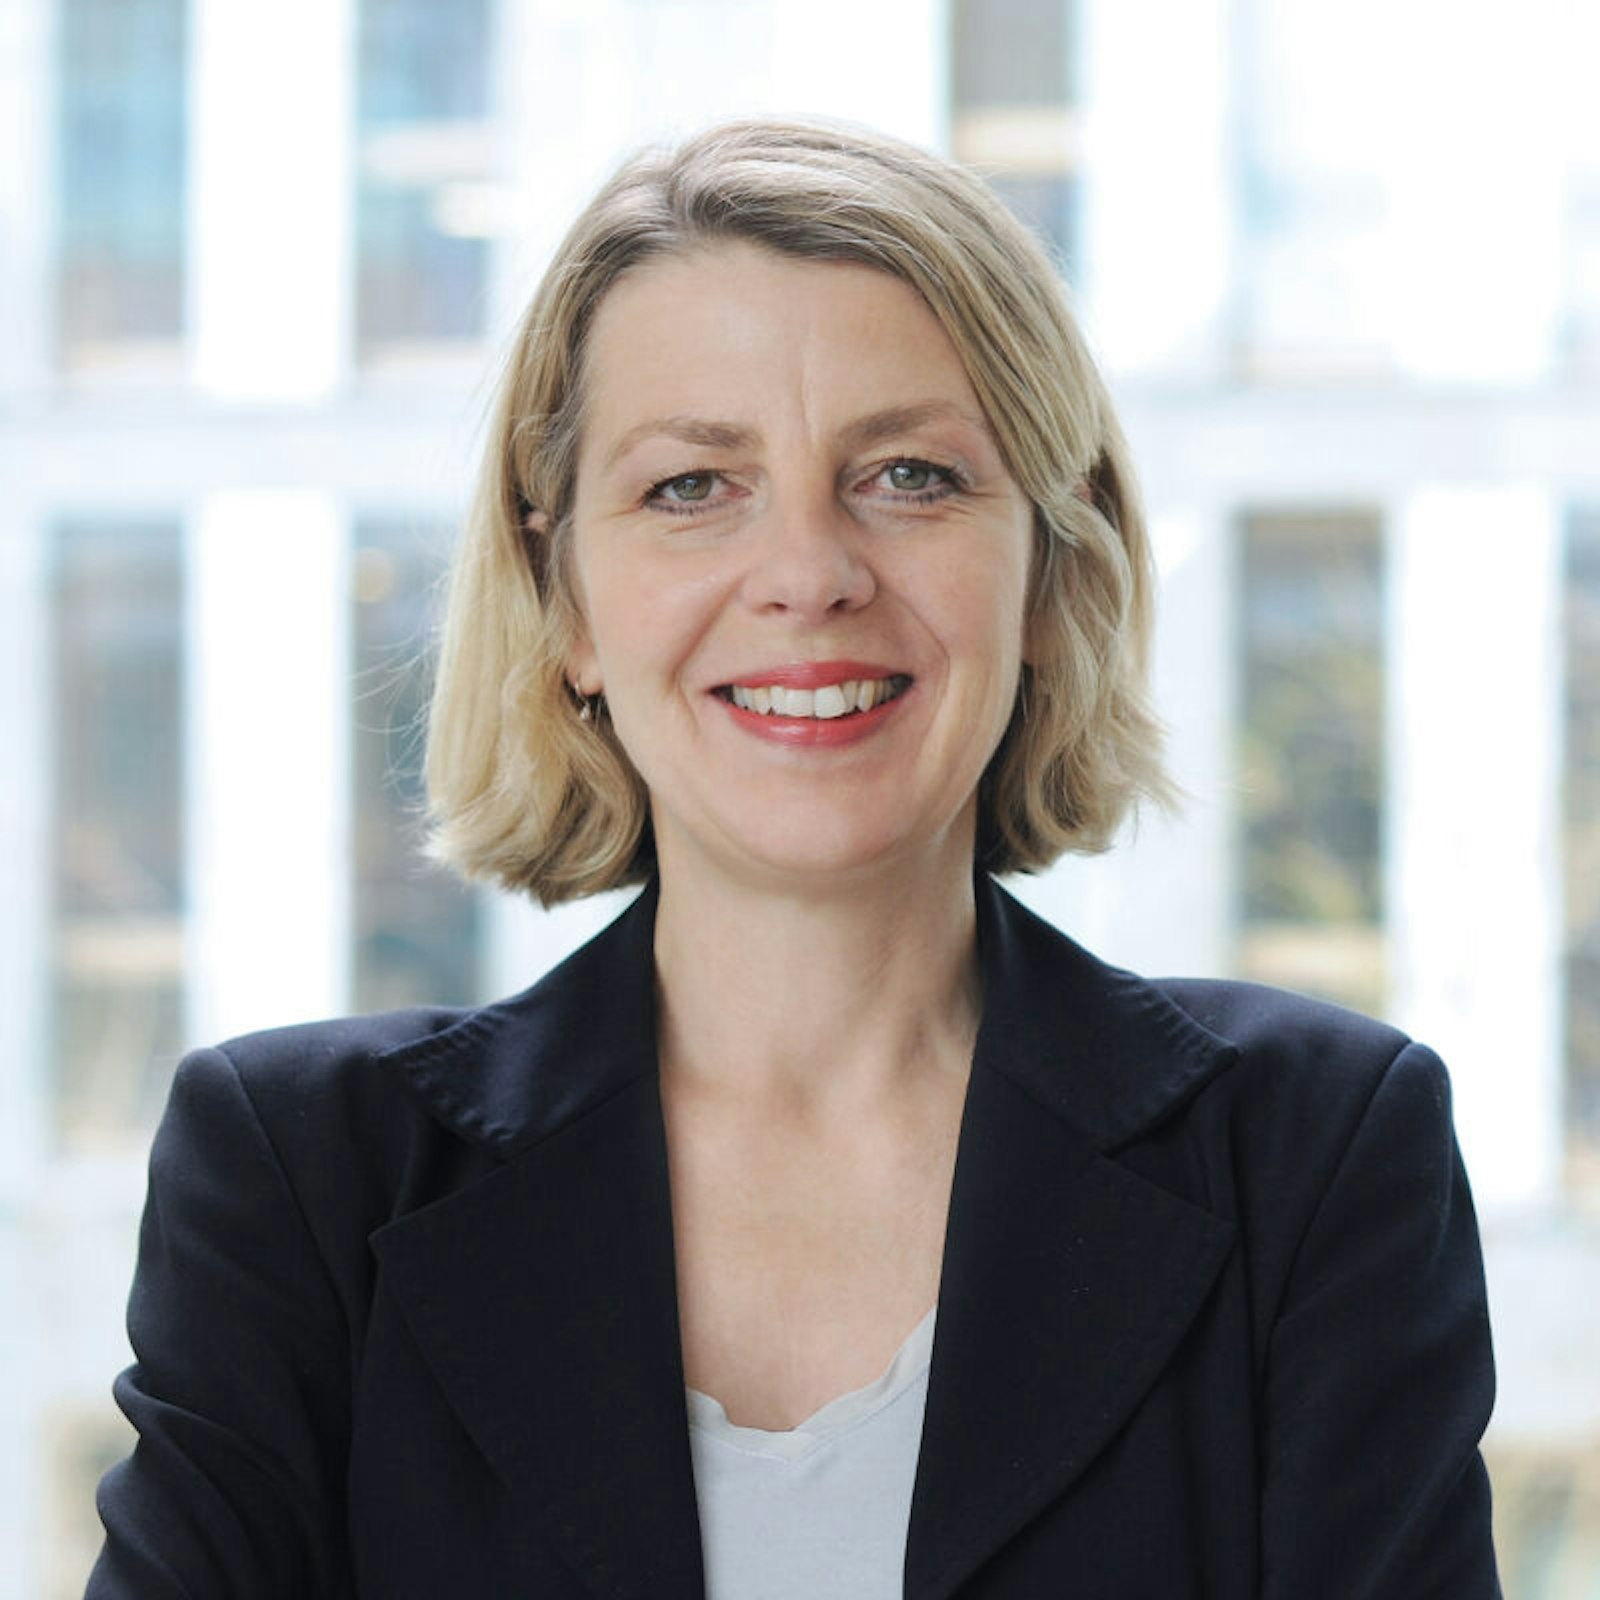 Professorin Sabine Andresen ist Erziehungswissenschaftlerin an der Goethe-Universität Frankfurt am Main und Vorsitzende der Unabhängigen Kommission zur Aufarbeitung sexuellen Kindesmissbrauchs.